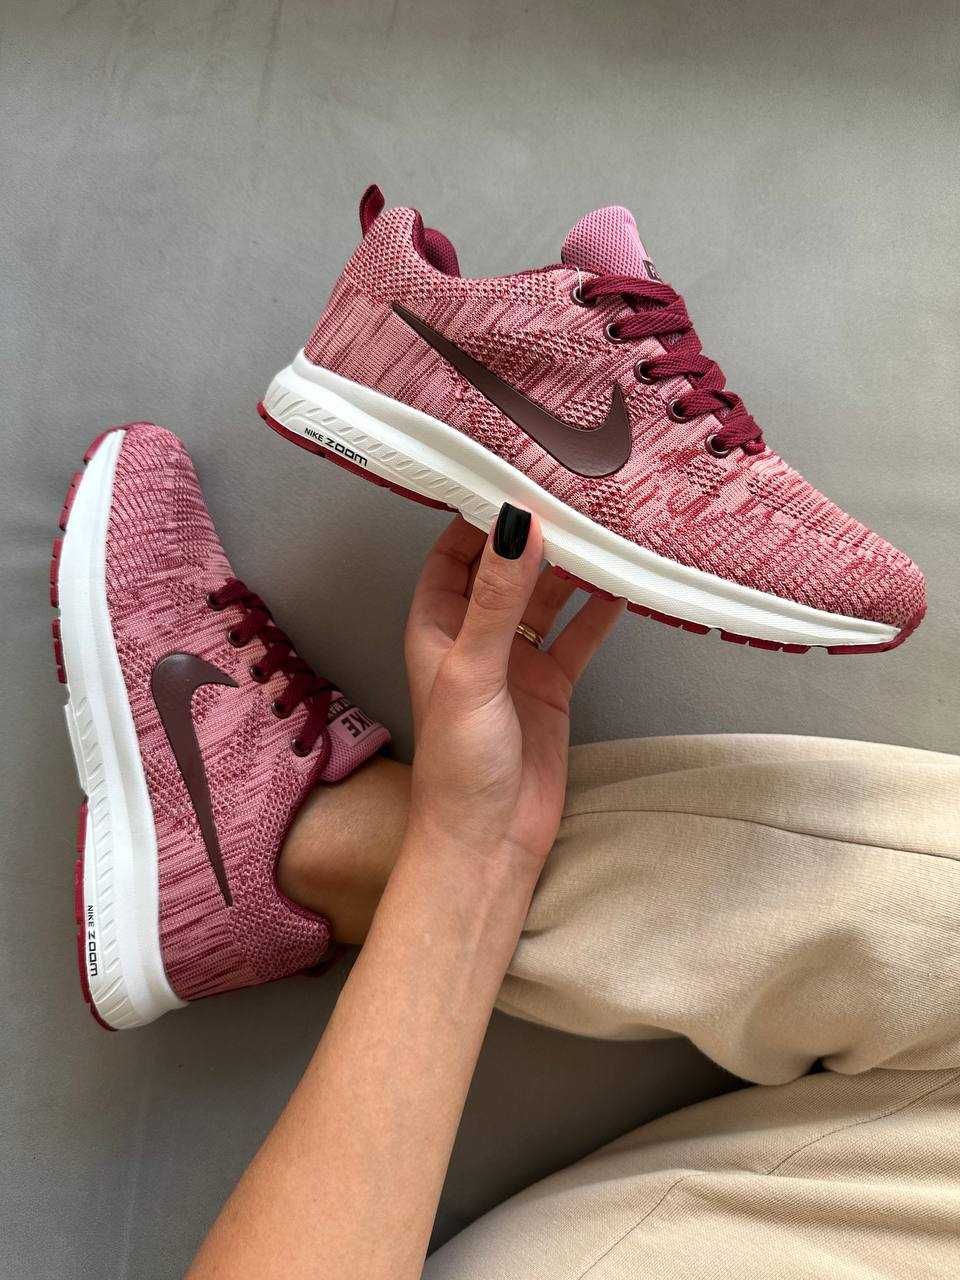 Жіночі кросівки Nike Flykit рожевий 2309 ТОПЧИК